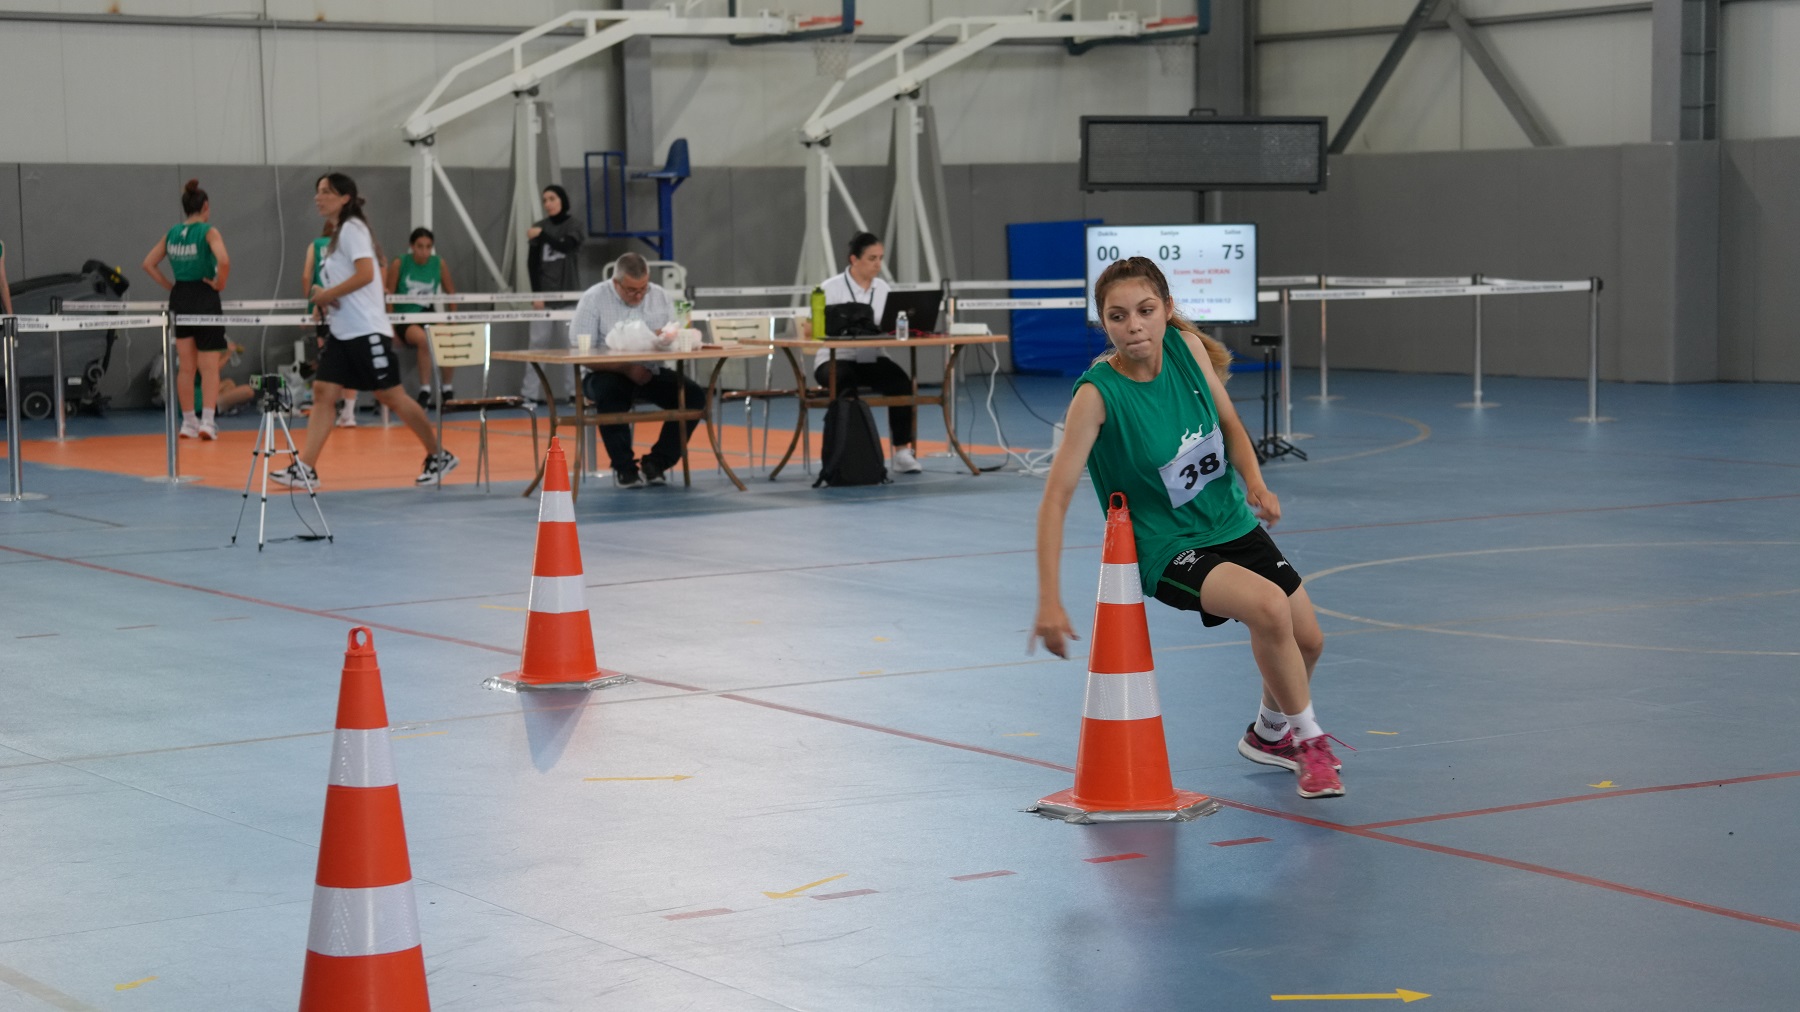 Yalova Üniversitesi Spor Bilimleri Fakültesinde Özel Yetenek Sınavı Başladı